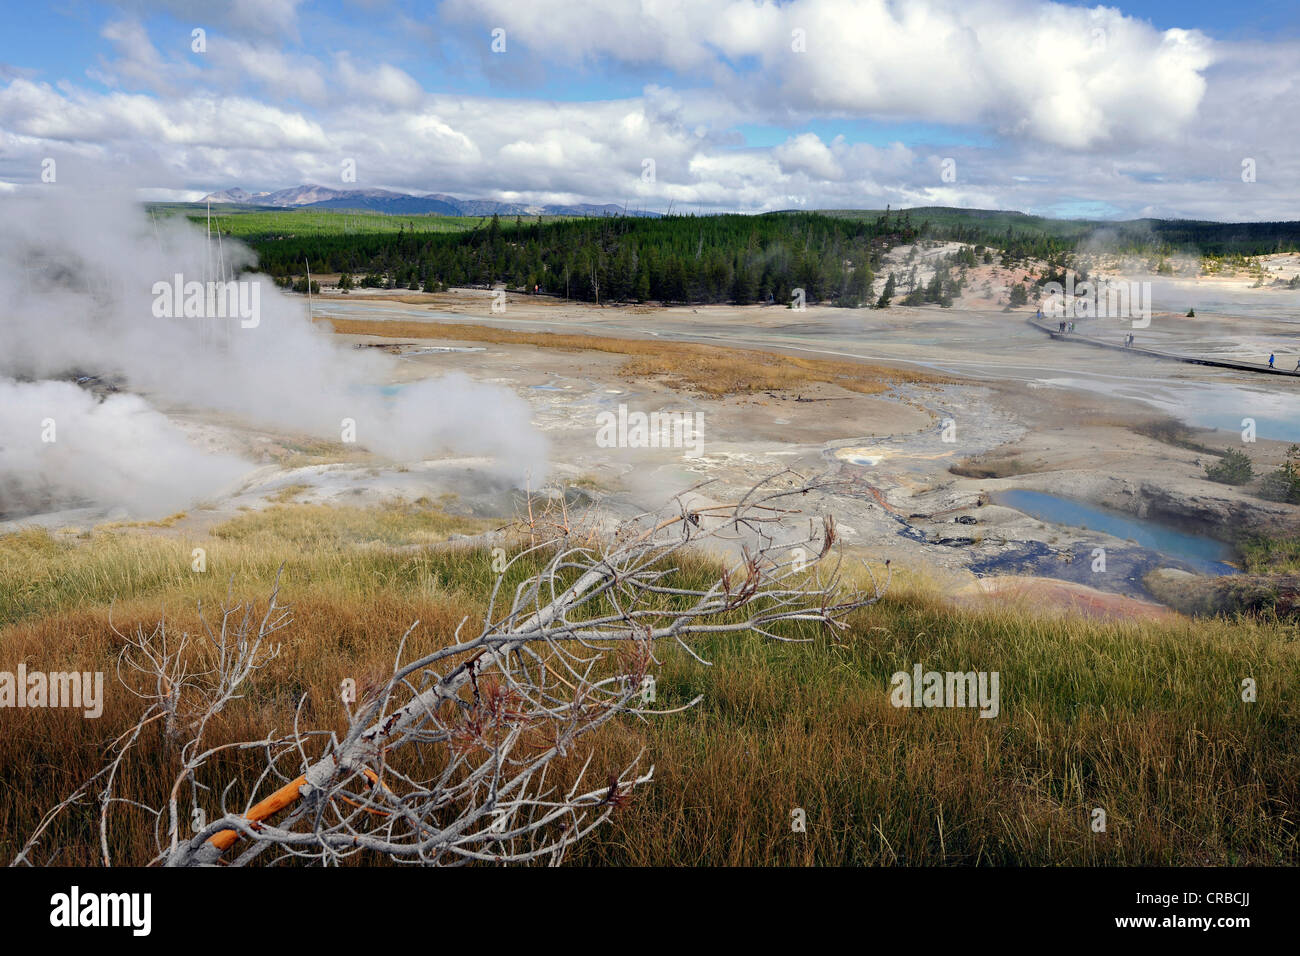 Mirador, Mirador de la cuenca de porcelana, Norris Géiser cuenca geotérmica, géiseres, piscinas calientes, el Parque Nacional Yellowstone, Wyoming, EE.UU. Foto de stock